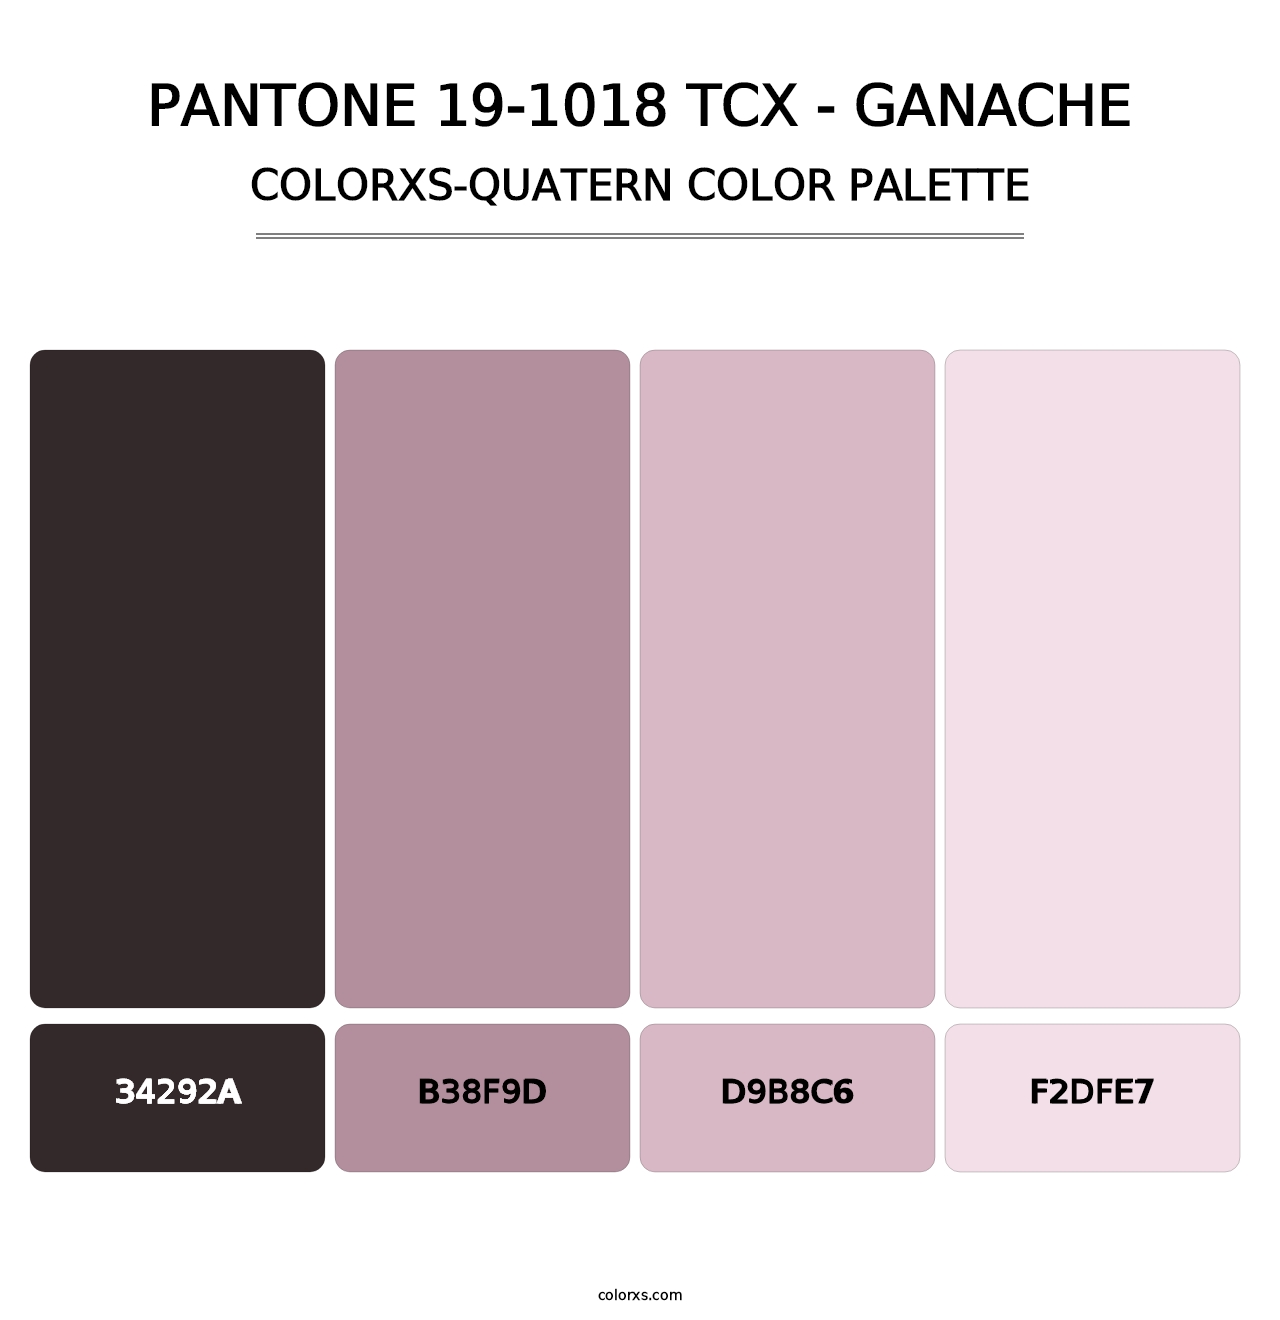 PANTONE 19-1018 TCX - Ganache - Colorxs Quatern Palette